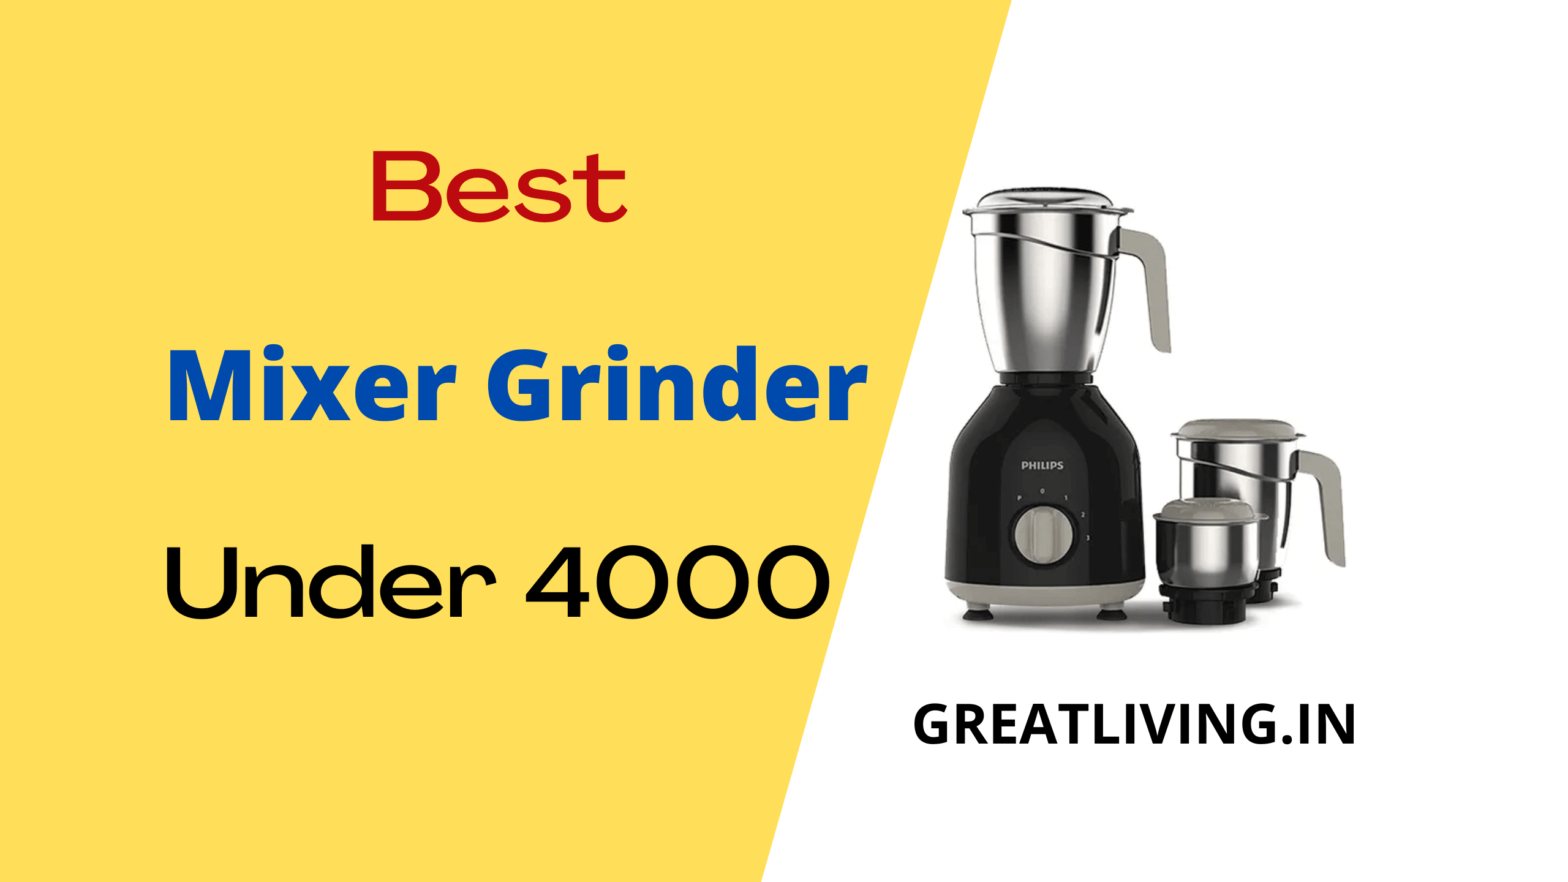 Best Mixer Grinder under 4000